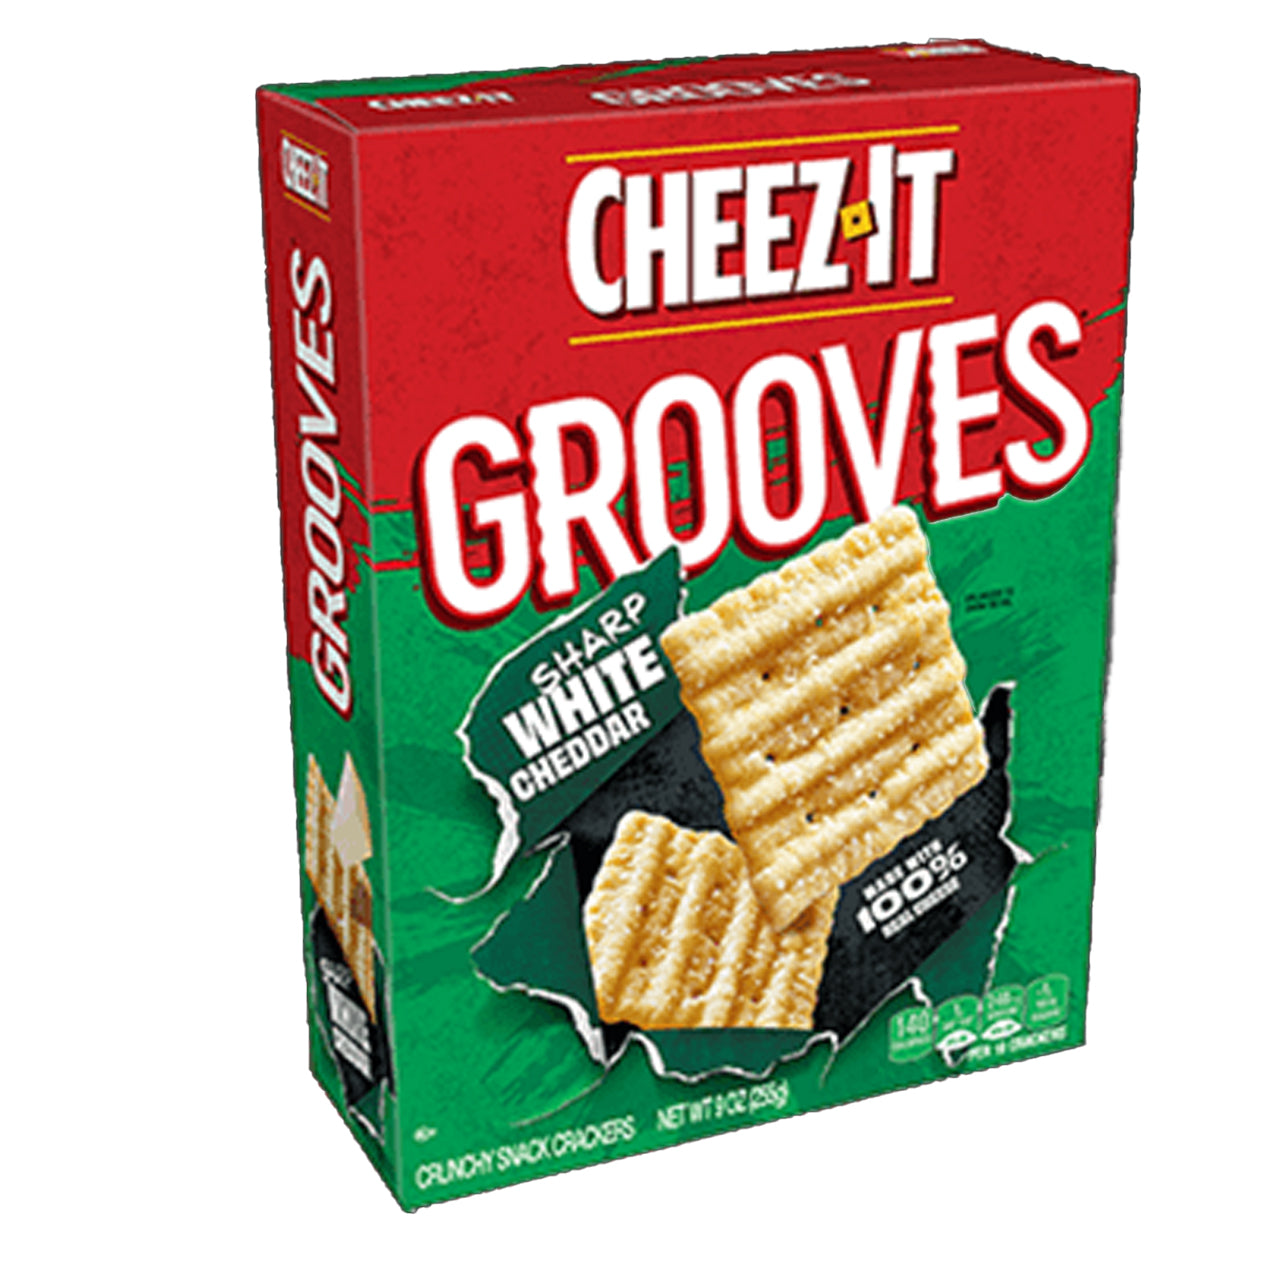 Cheez-IT  Grooves Sharp White Chaddar צ'יז איט צ'דר לבן